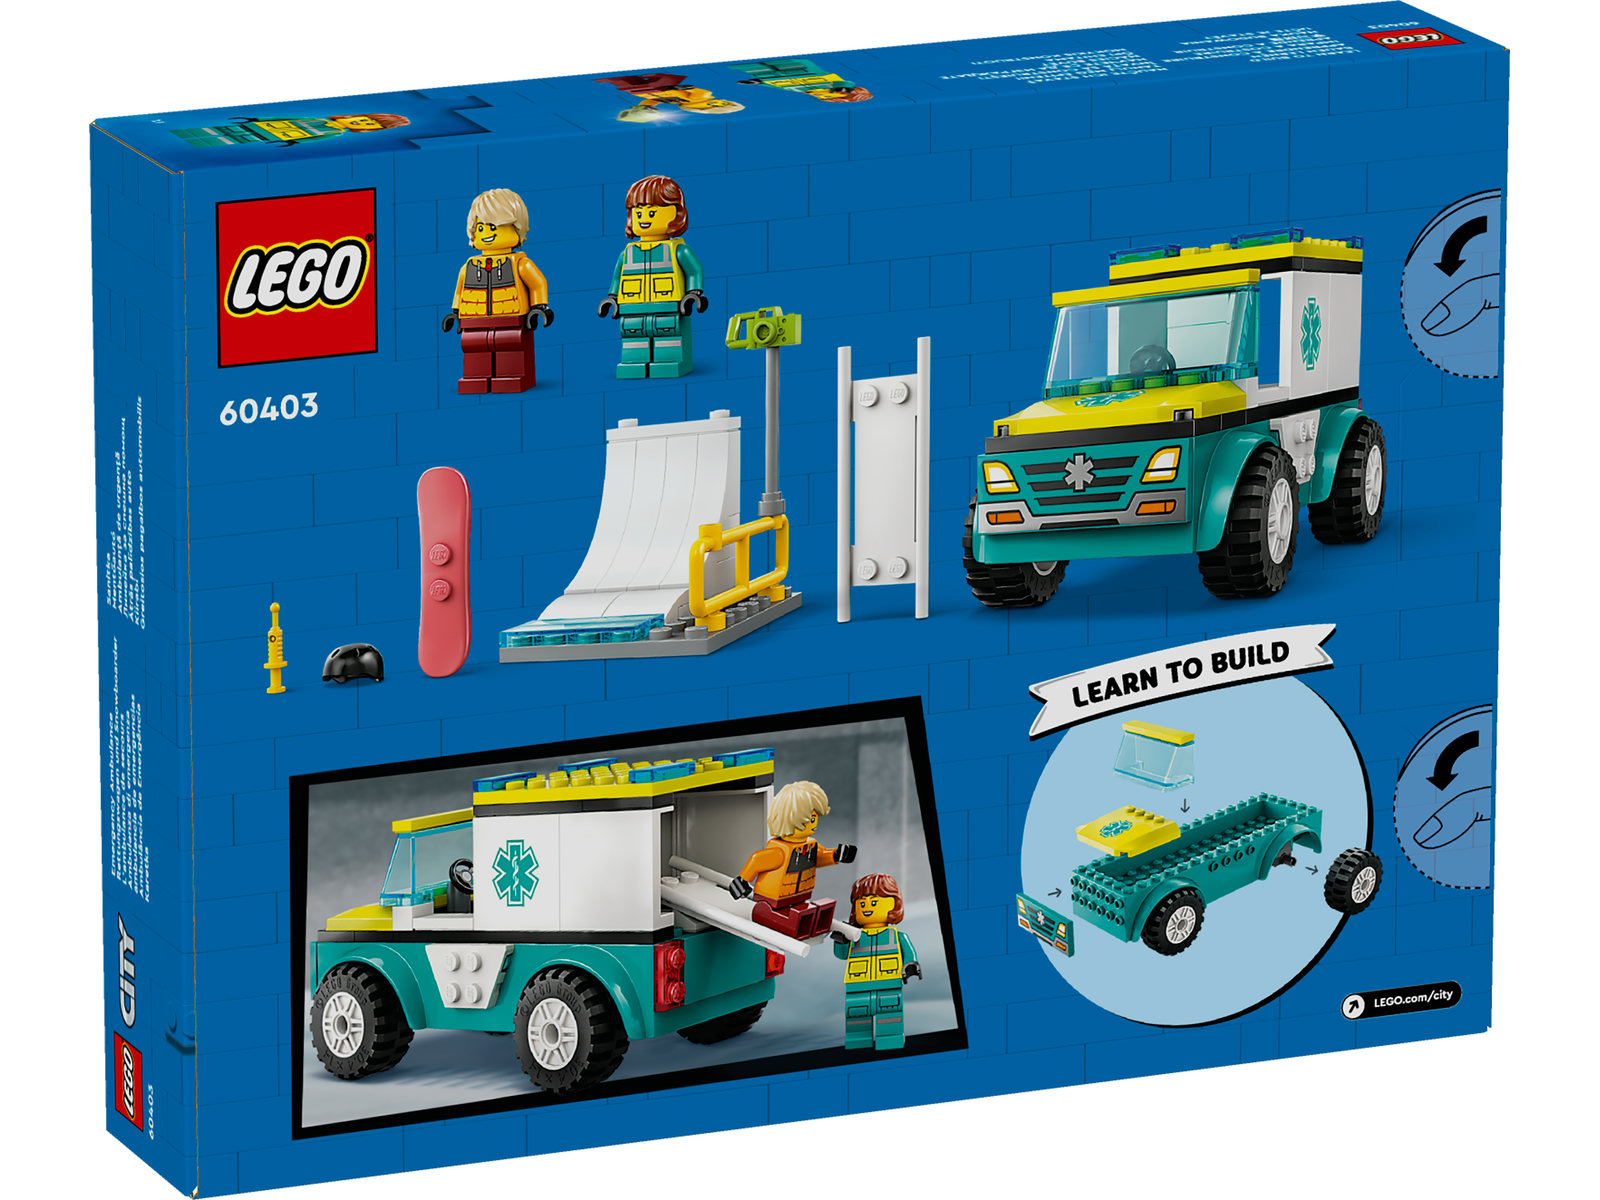 LEGO® City 60403 - Rettungswagen und Snowboarder